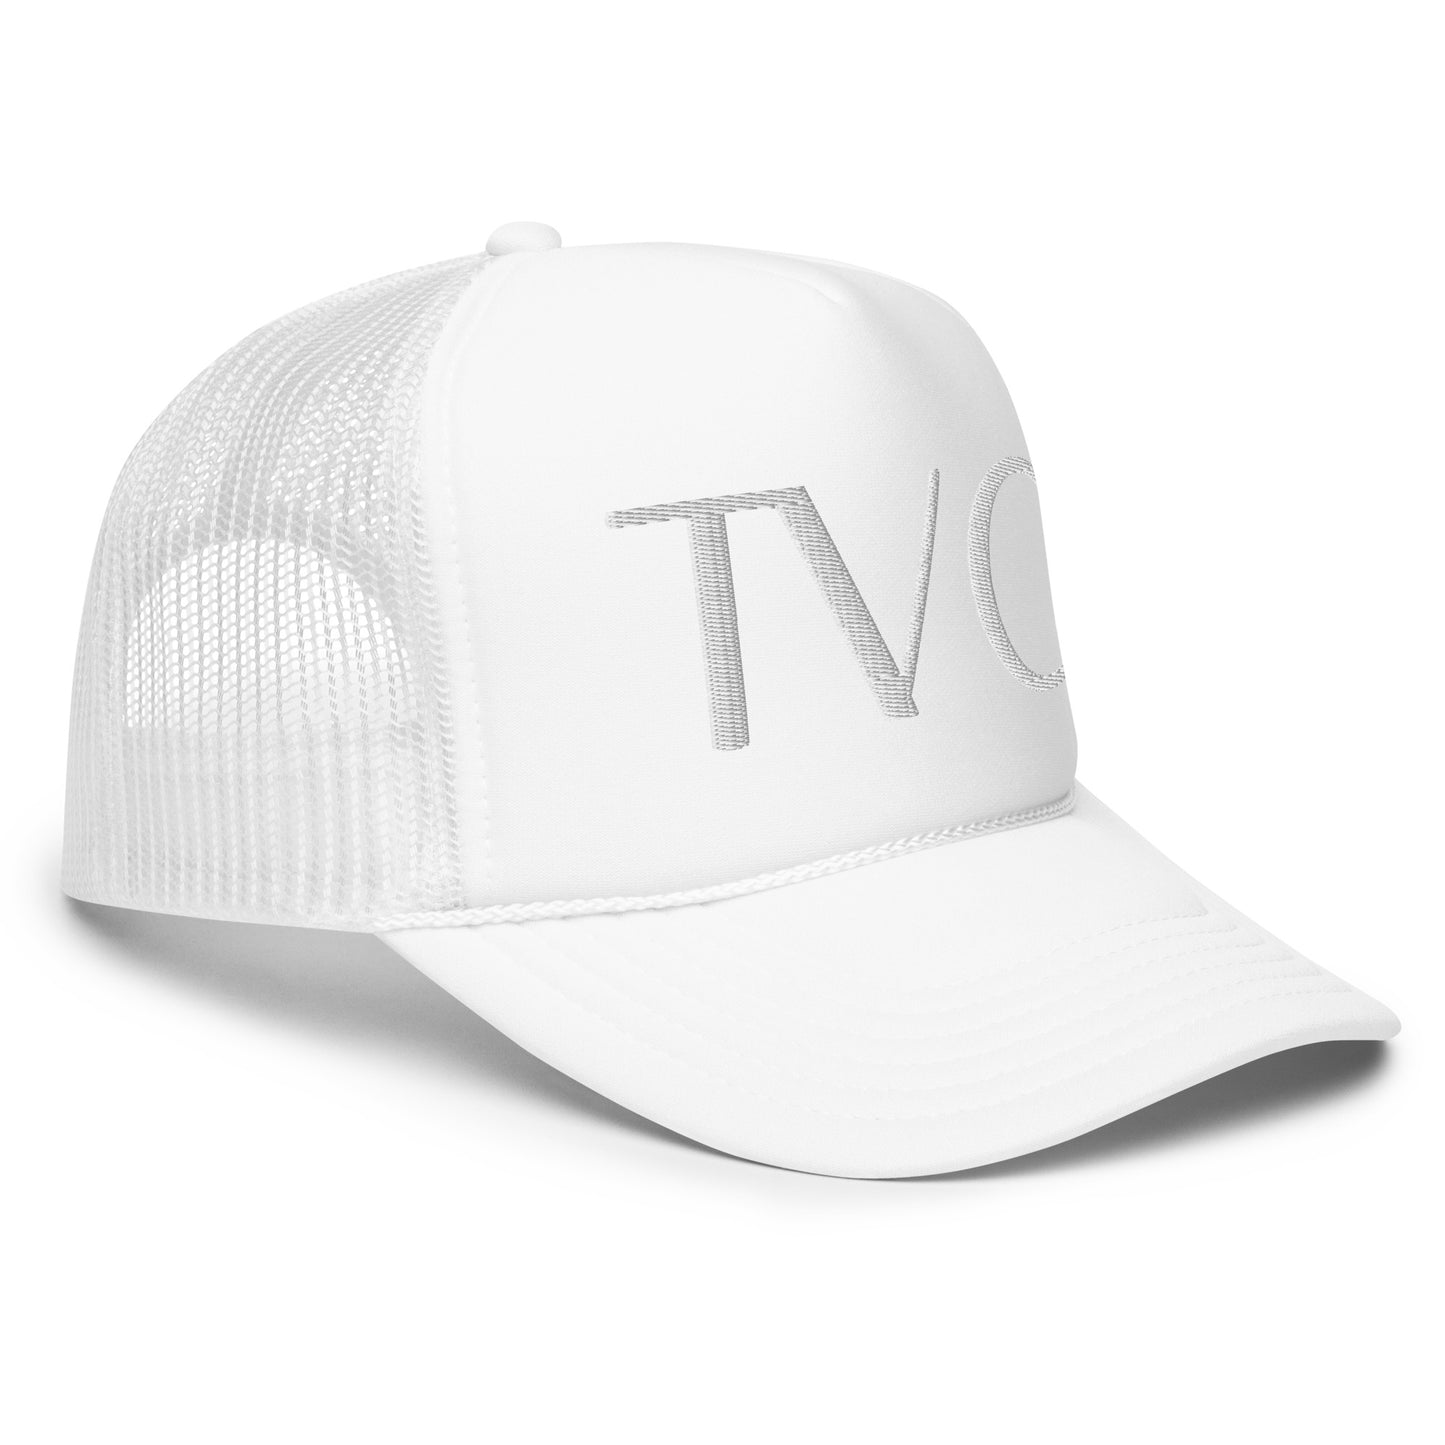 TVC: Foam trucker hat